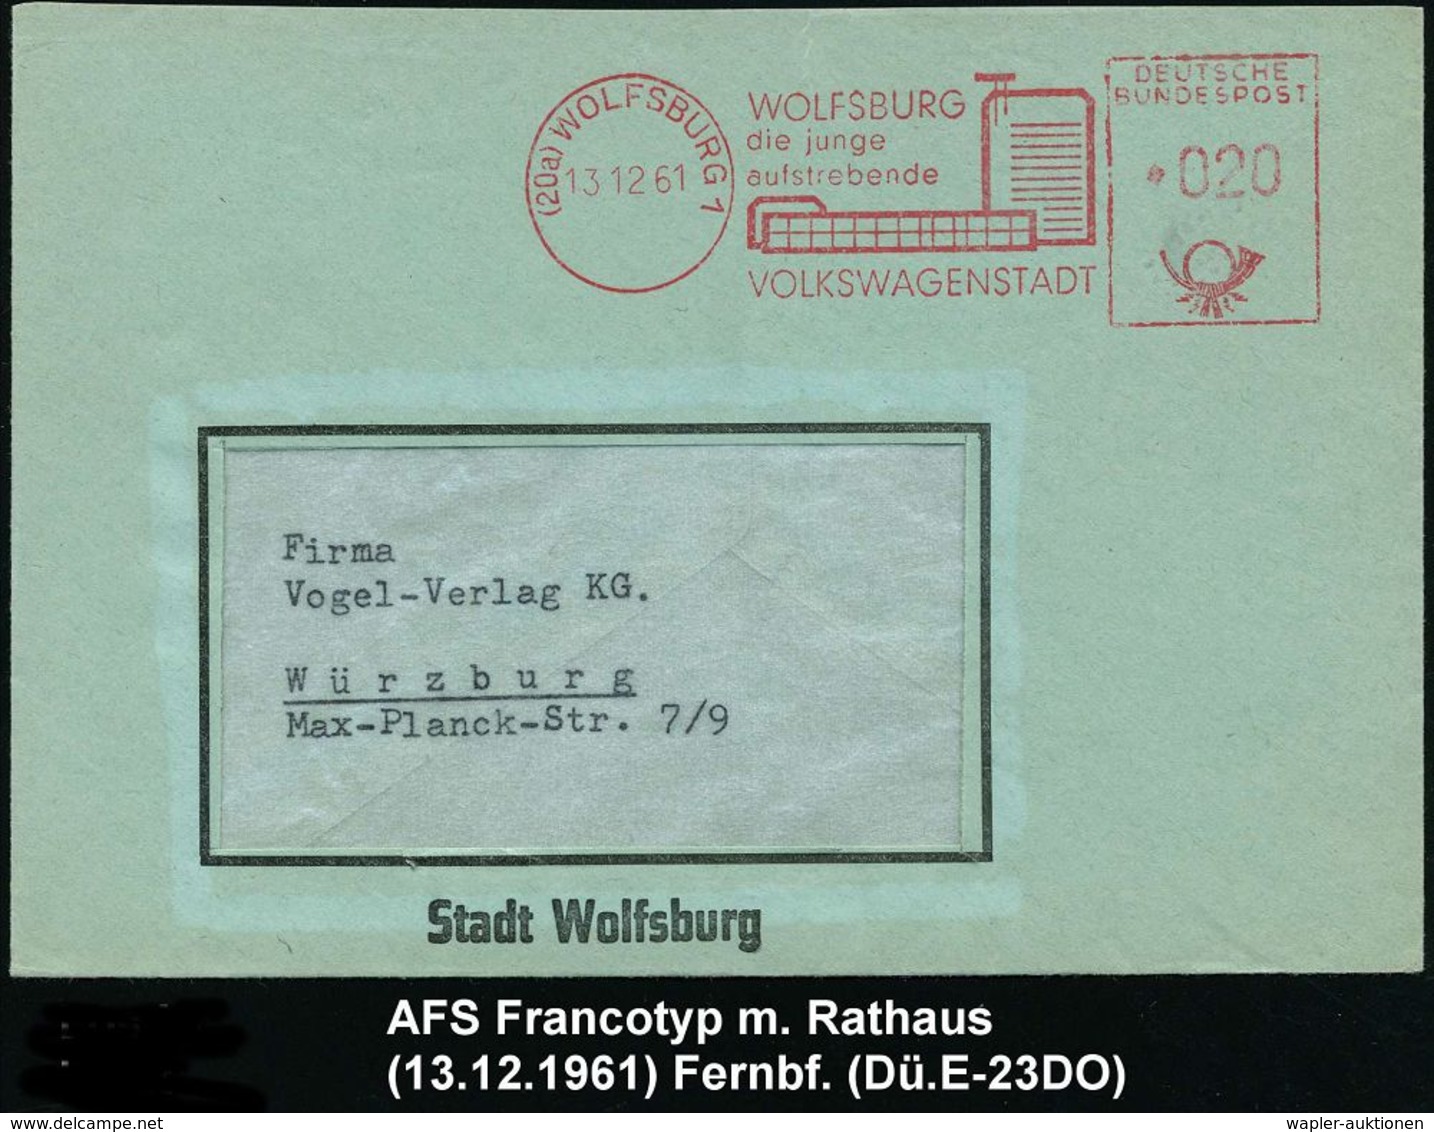 VOLKSWAGEN / VW / K.-D.-F.-WAGEN / PORSCHE : (20a) WOLFSBURG 1/ Die Junge/ ..VOLKSWAGENSTADT 1961 (13.12.) AFS (moderne  - Voitures